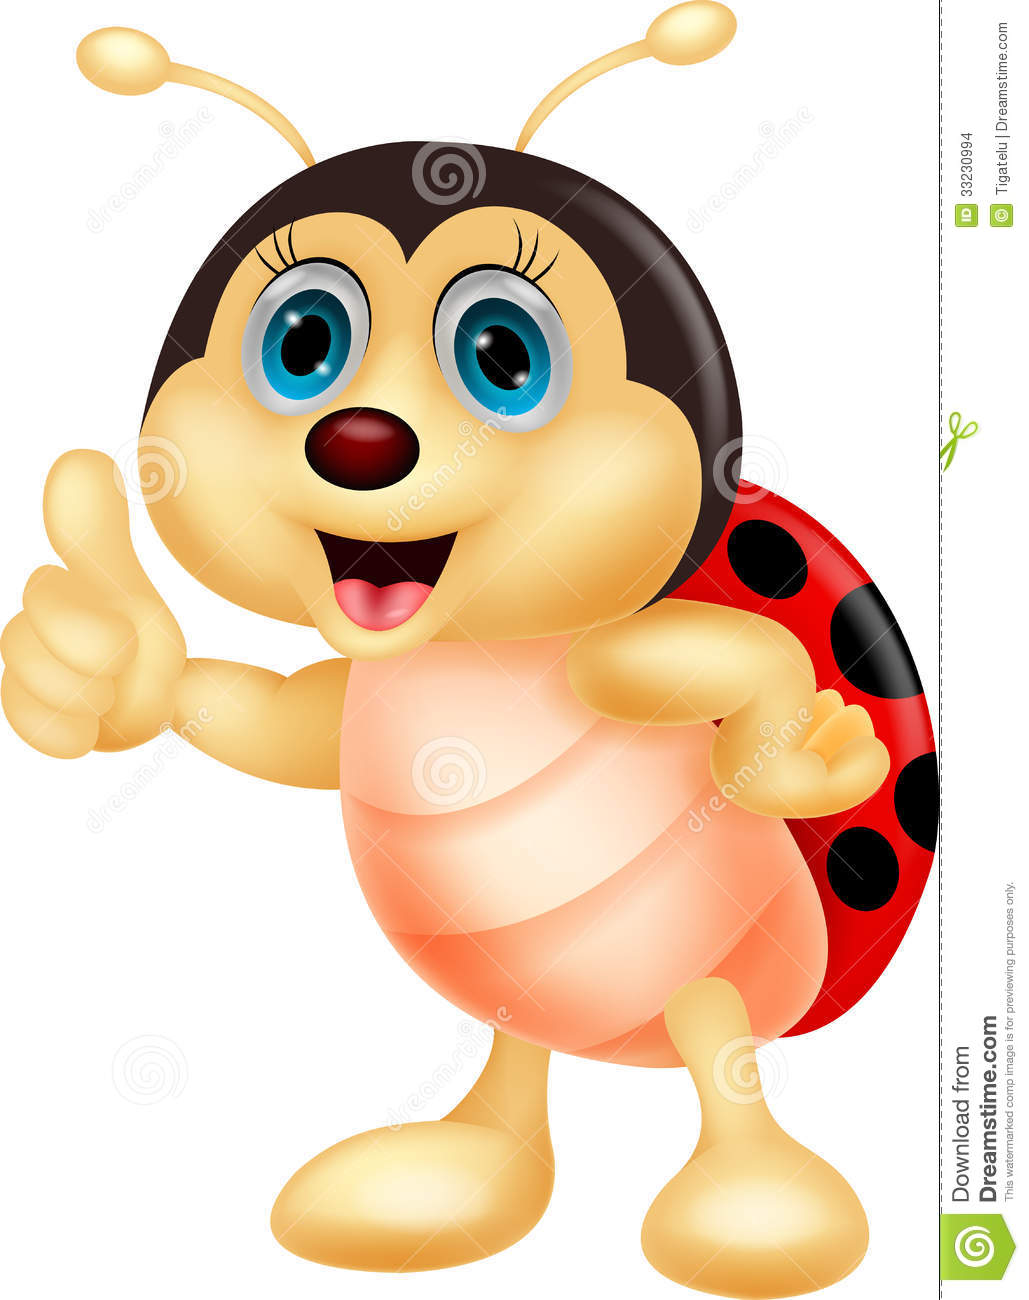 Cute Ladybug Cartoon Thumb Up Stock Images   Image  33230994